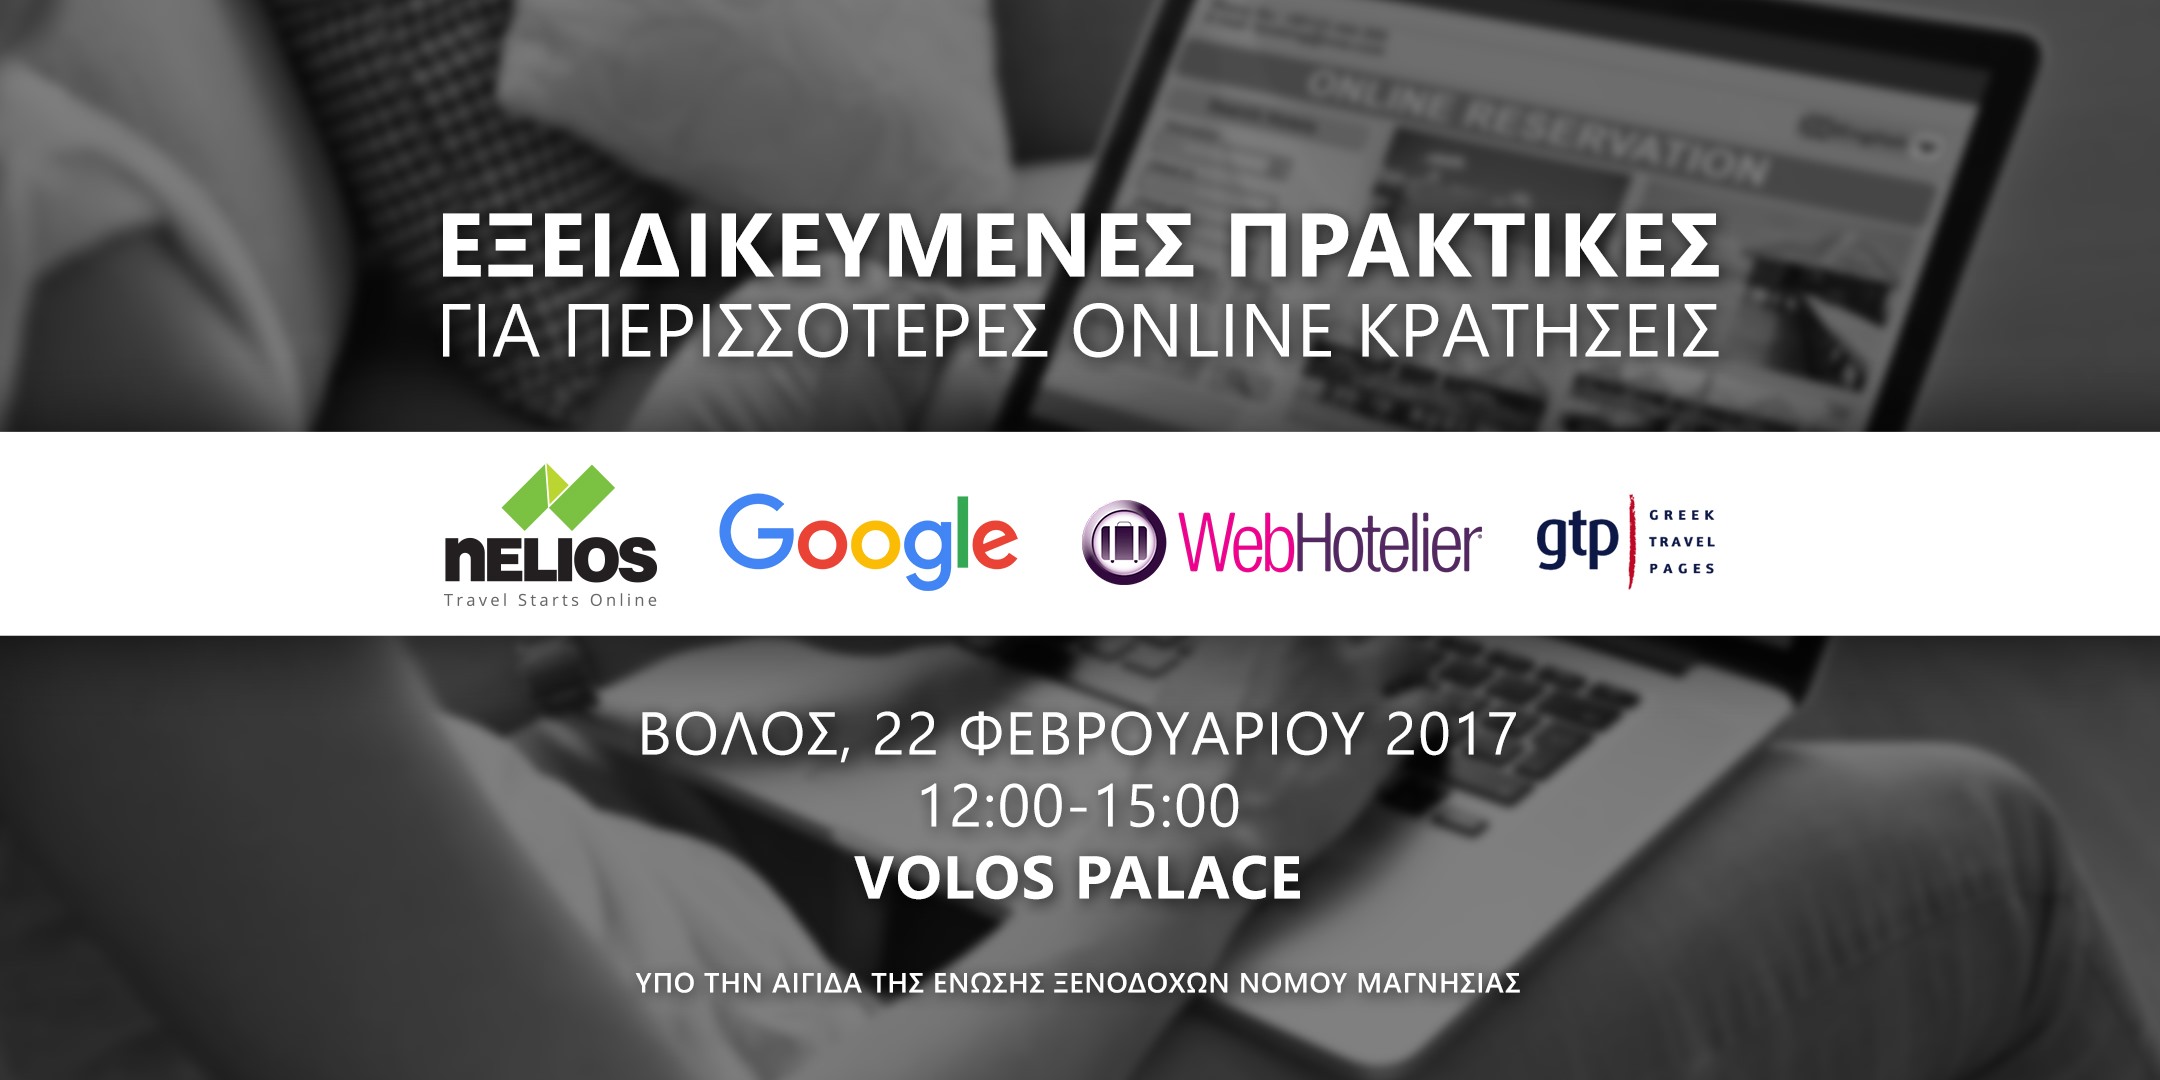 Βόλος: Εκδήλωση για Εξειδικευμένες Πρακτικές για Περισσότερες Online Κρατήσεις από την Nelios marketing